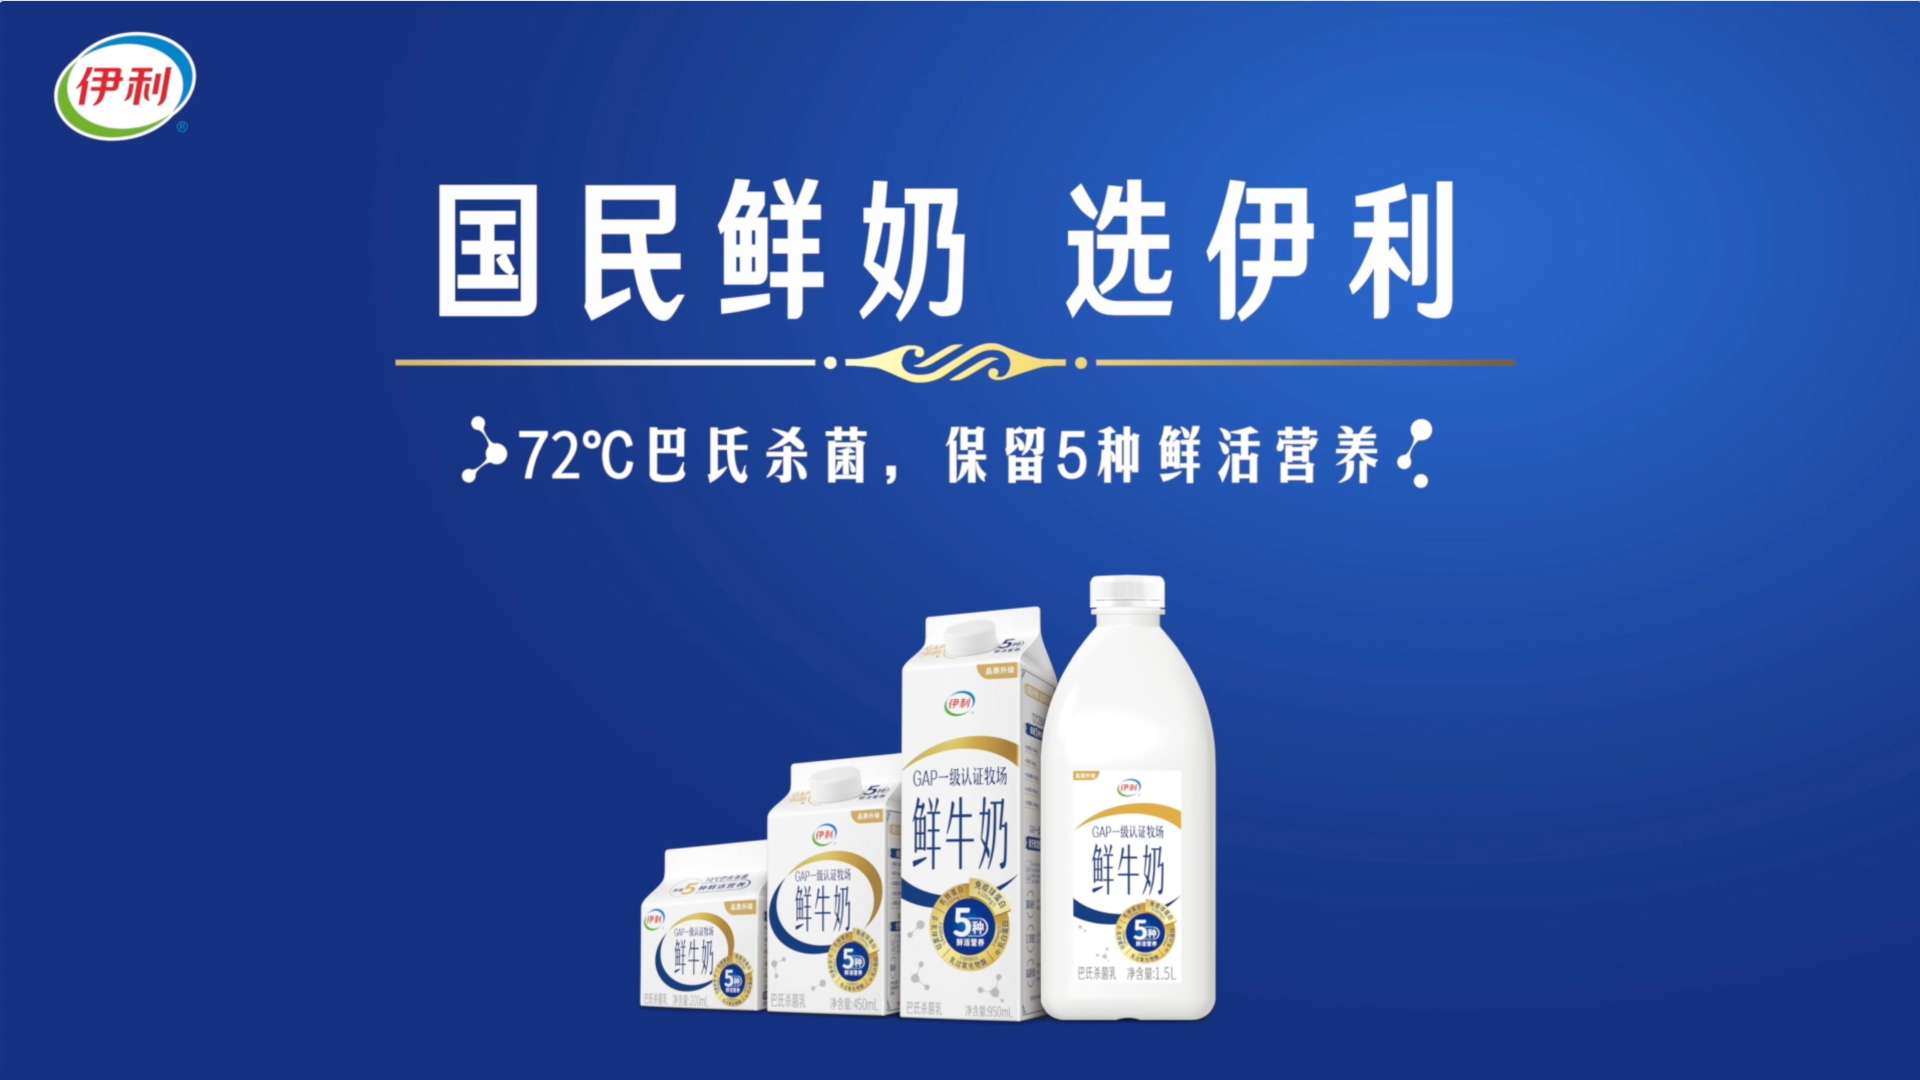 伊利鲜牛奶 | 产品广告